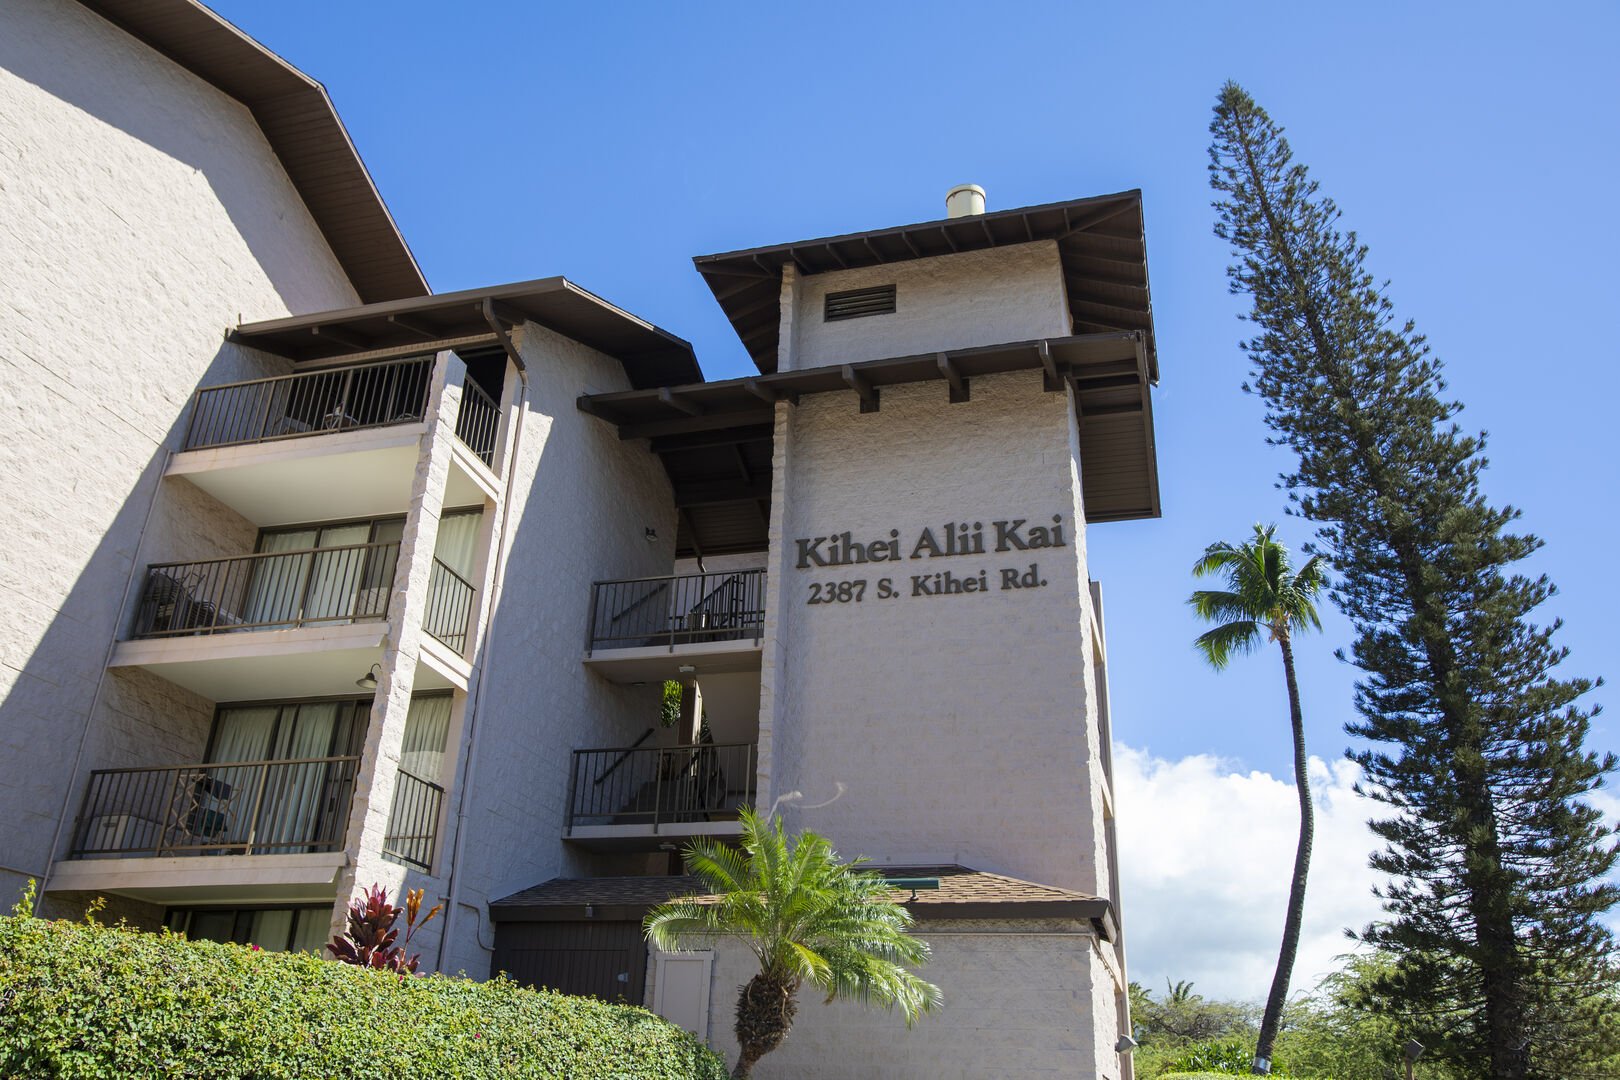 Welcome to Kihei Ali'i Kai!